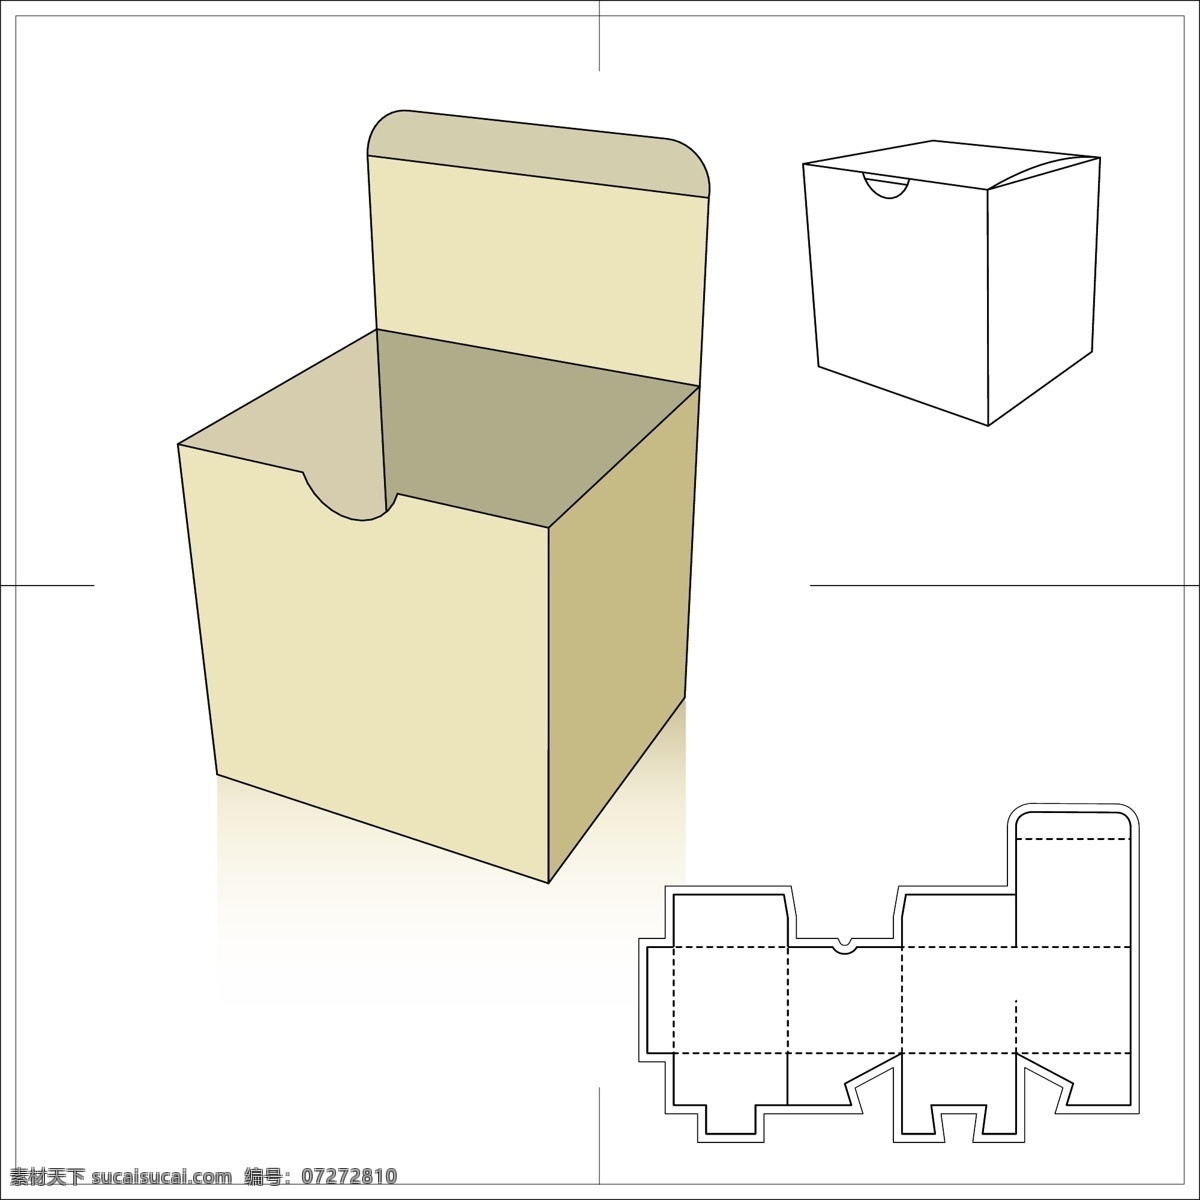 立方体包装盒 包装盒 纸盒 净色纸盒 包装盒设计 盒子 方盒 包装设计 矢量